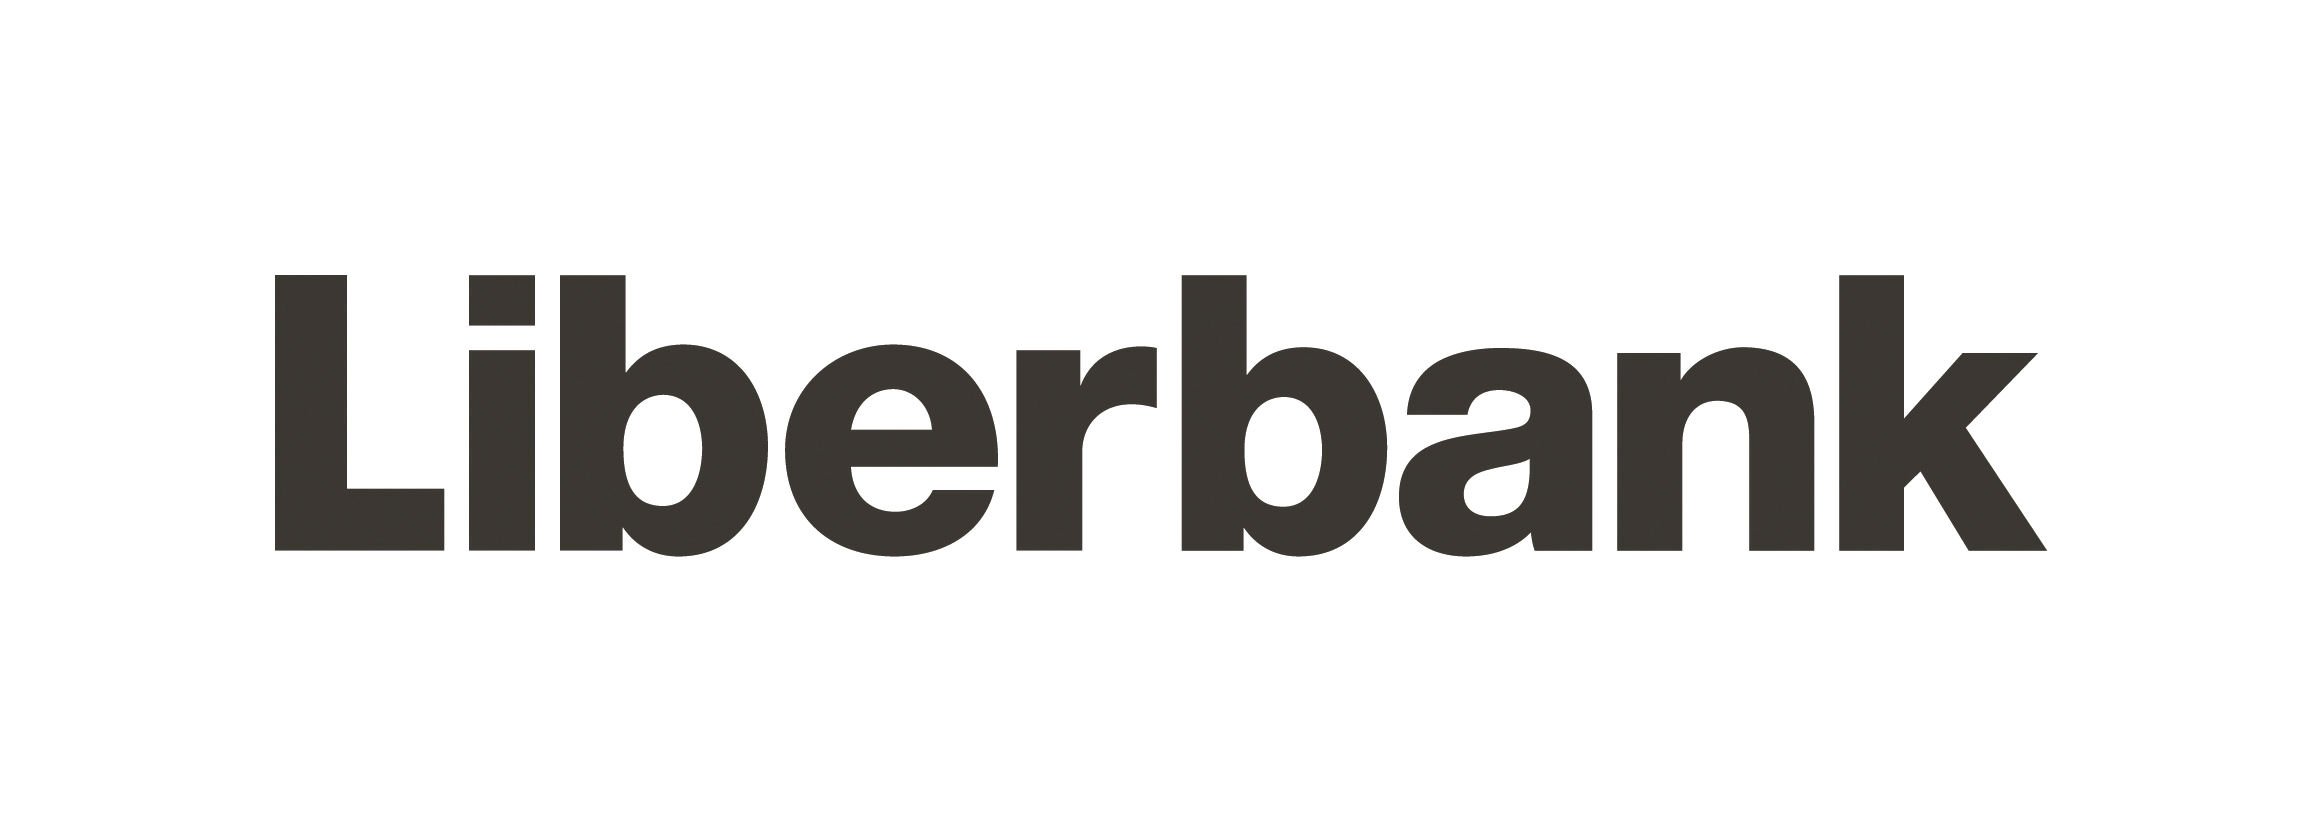 Liberbank aumenta su beneficio neto en un 0,6% en 2019 hasta los 111 millones